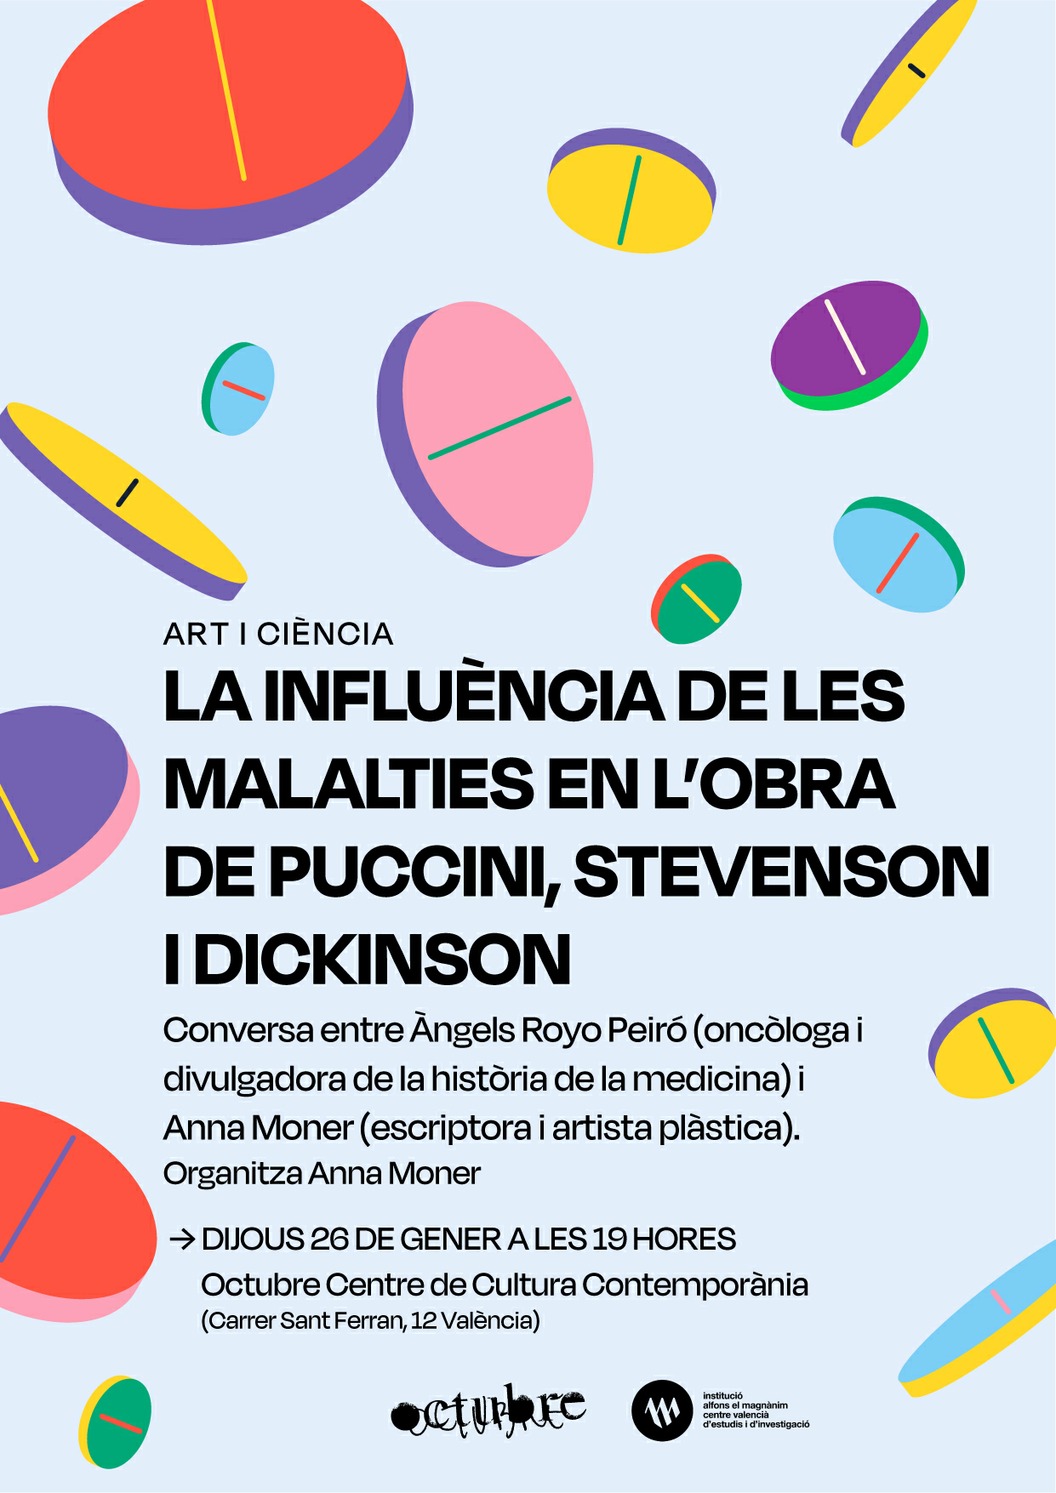 Art i Ciència: La influència de les malalties en l'obra de Puccini, Stevenson i Dickinson